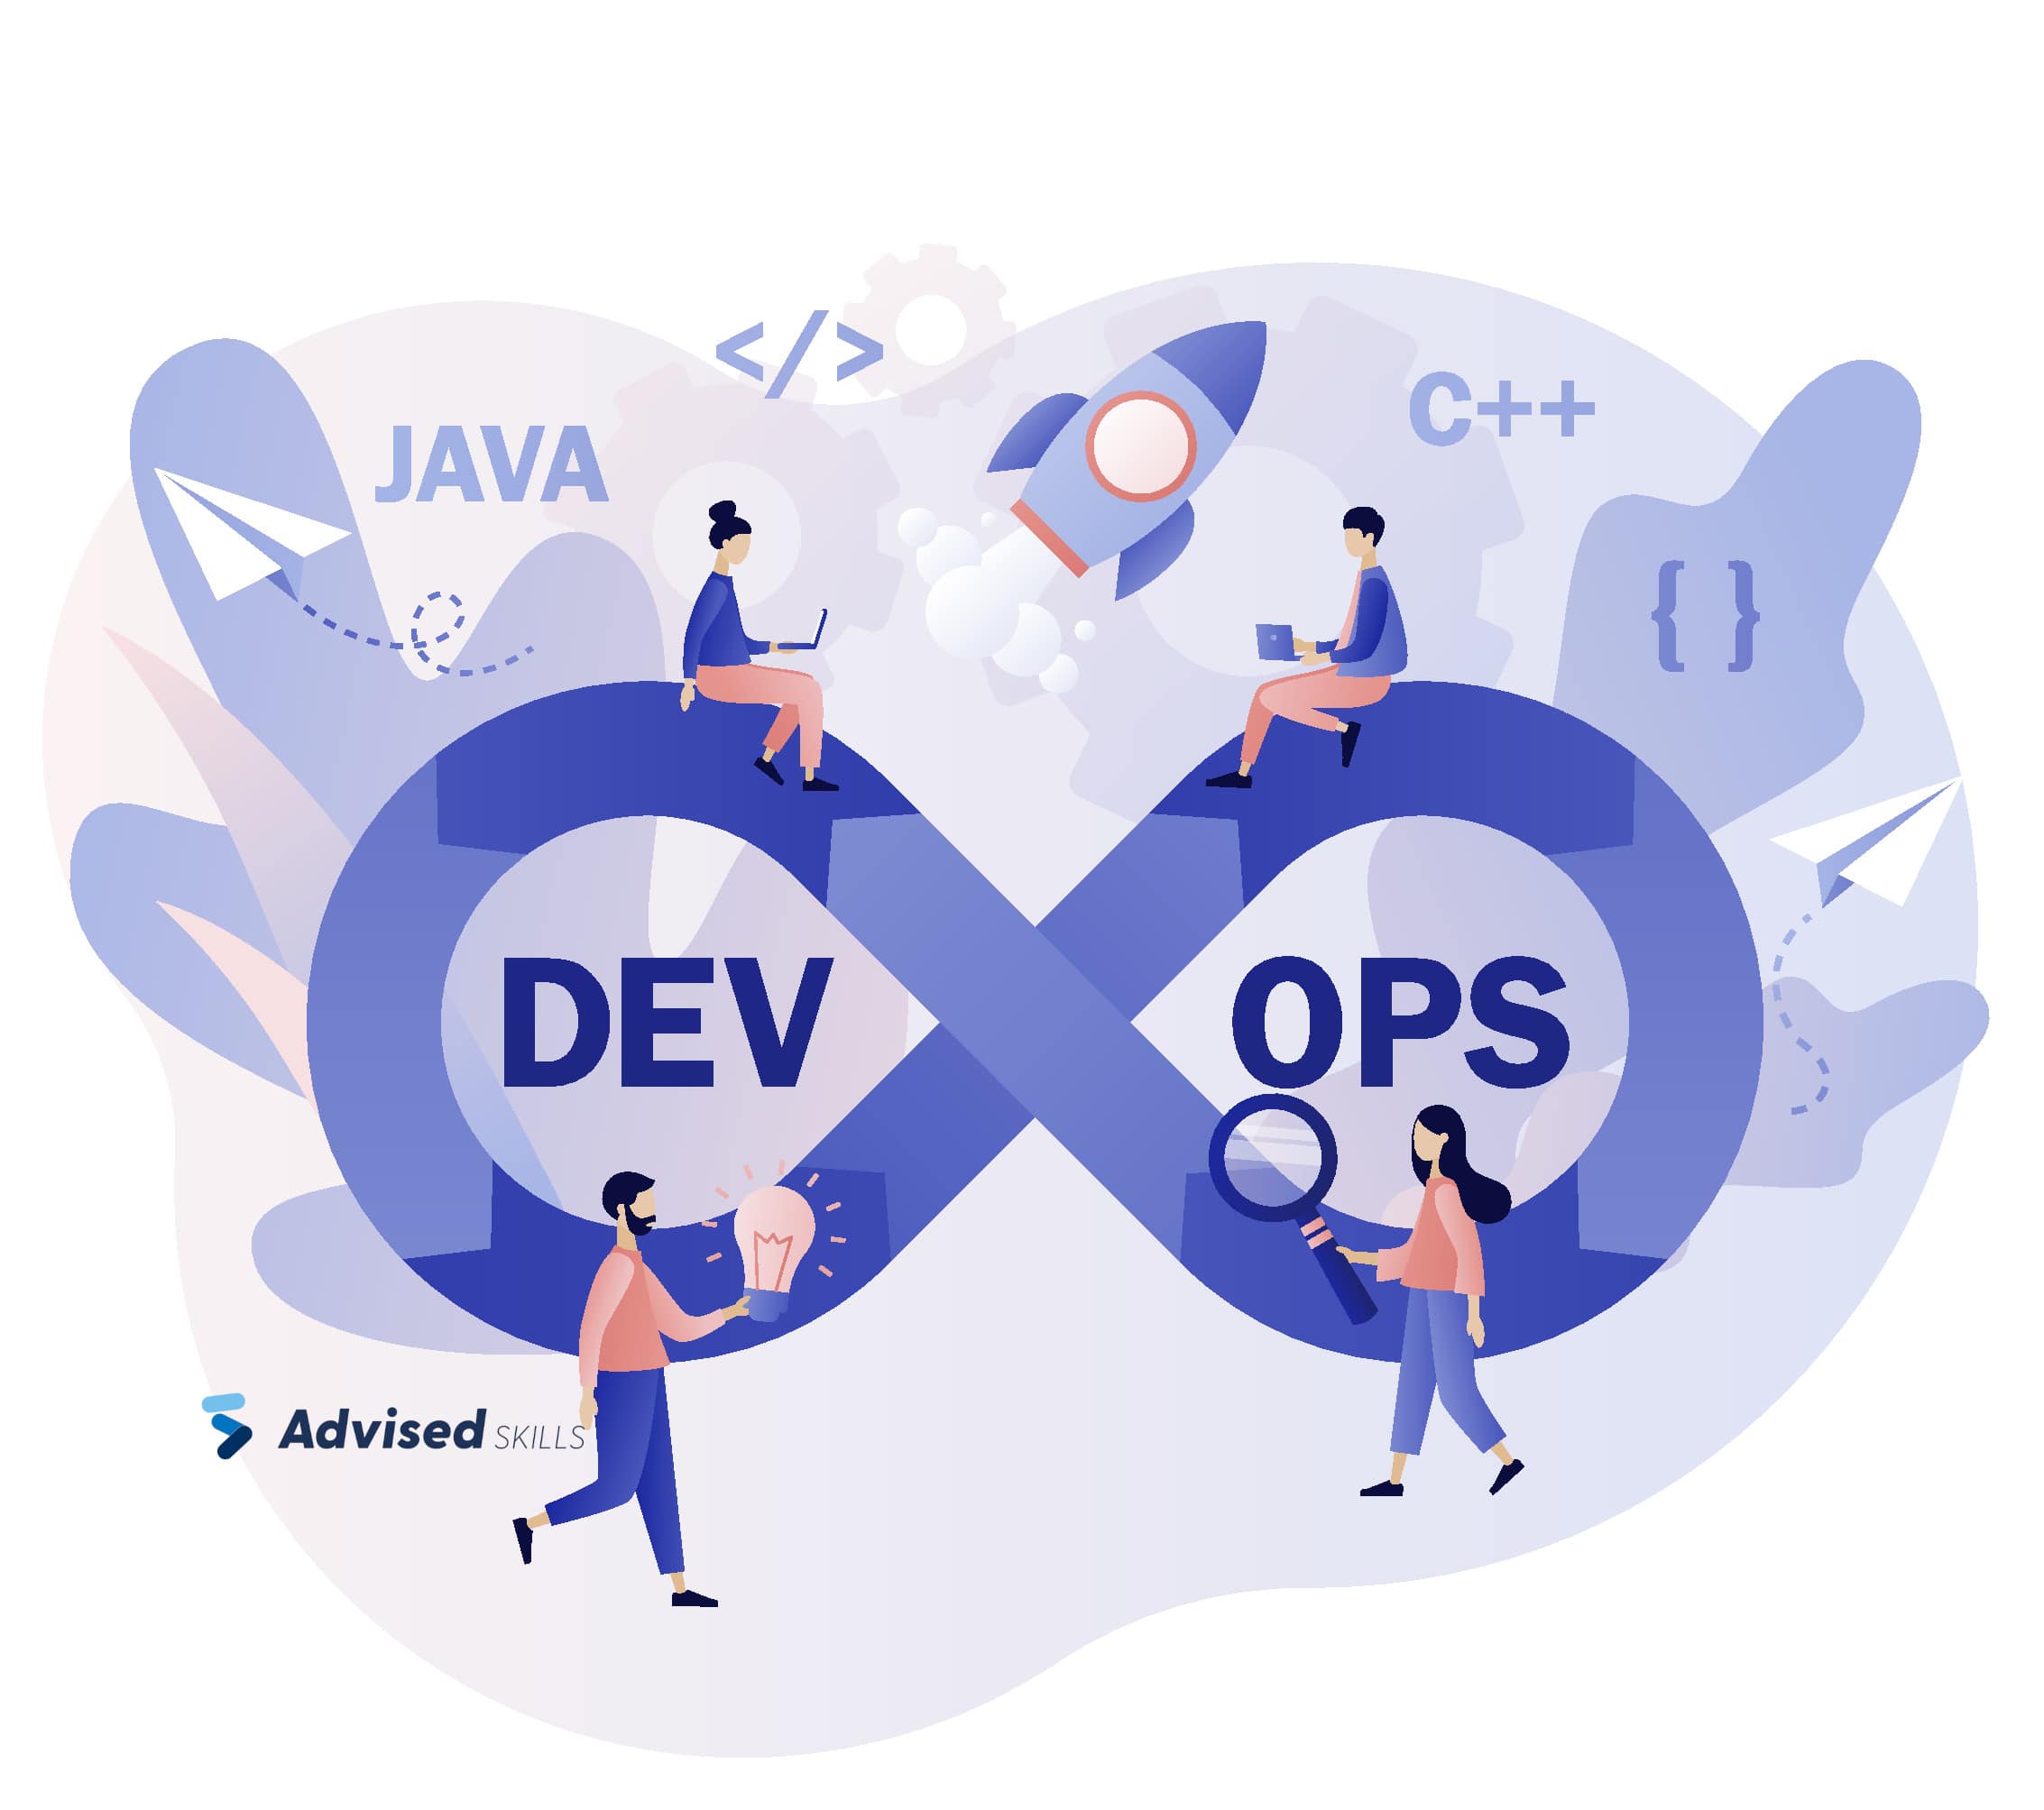 DevOps-Java-C